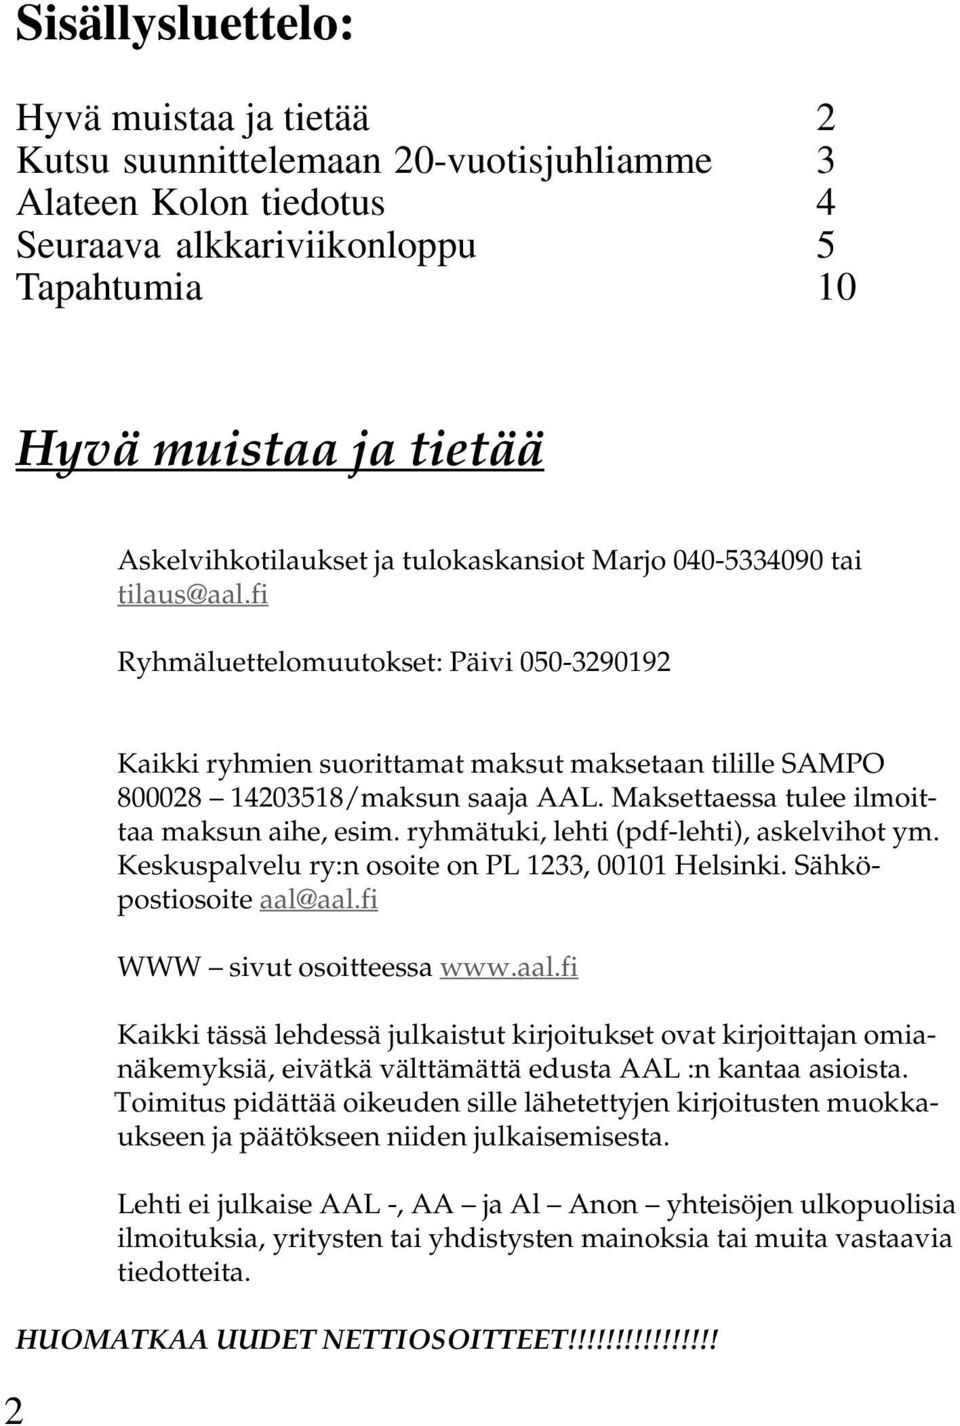 Maksettaessa tulee ilmoittaa maksun aihe, esim. ryhmätuki, lehti (pdf-lehti), askelvihot ym. Keskuspalvelu ry:n osoite on PL 1233, 00101 Helsinki. Sähköpostiosoite aal@aal.